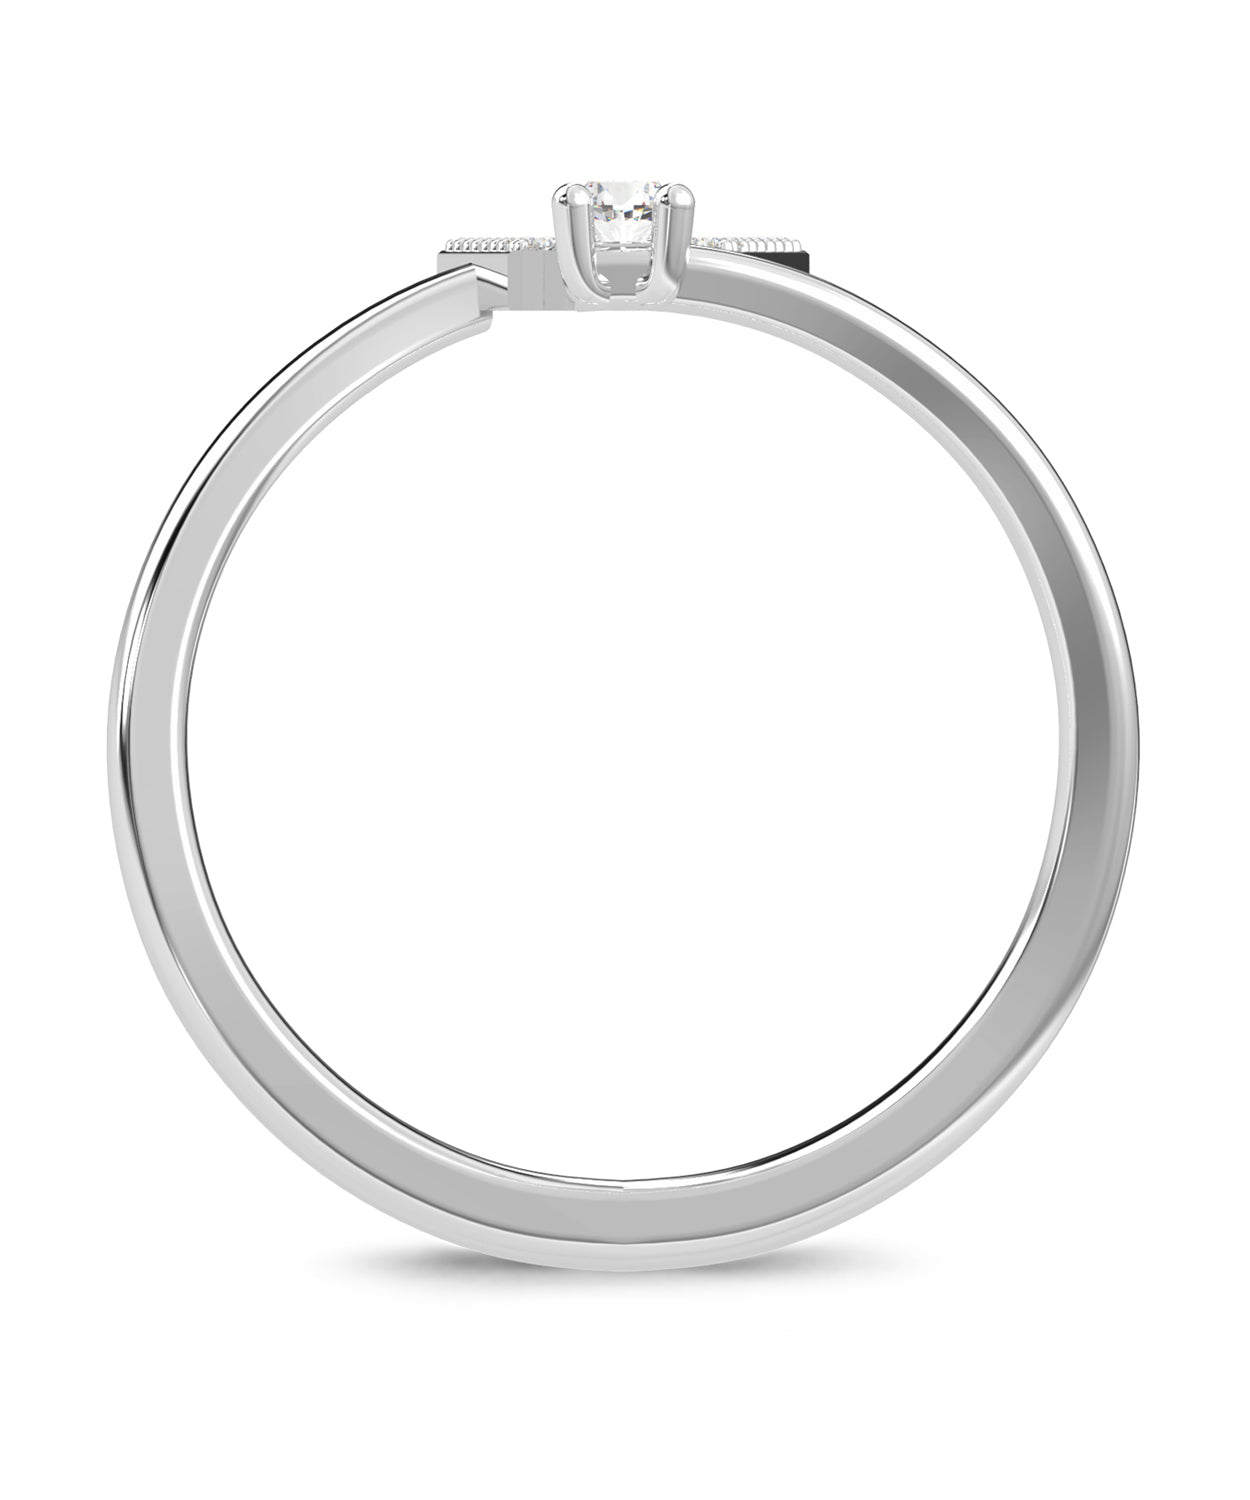 ESEMCO Diamond 18k White Gold Letter W Initial Open Ring View 2